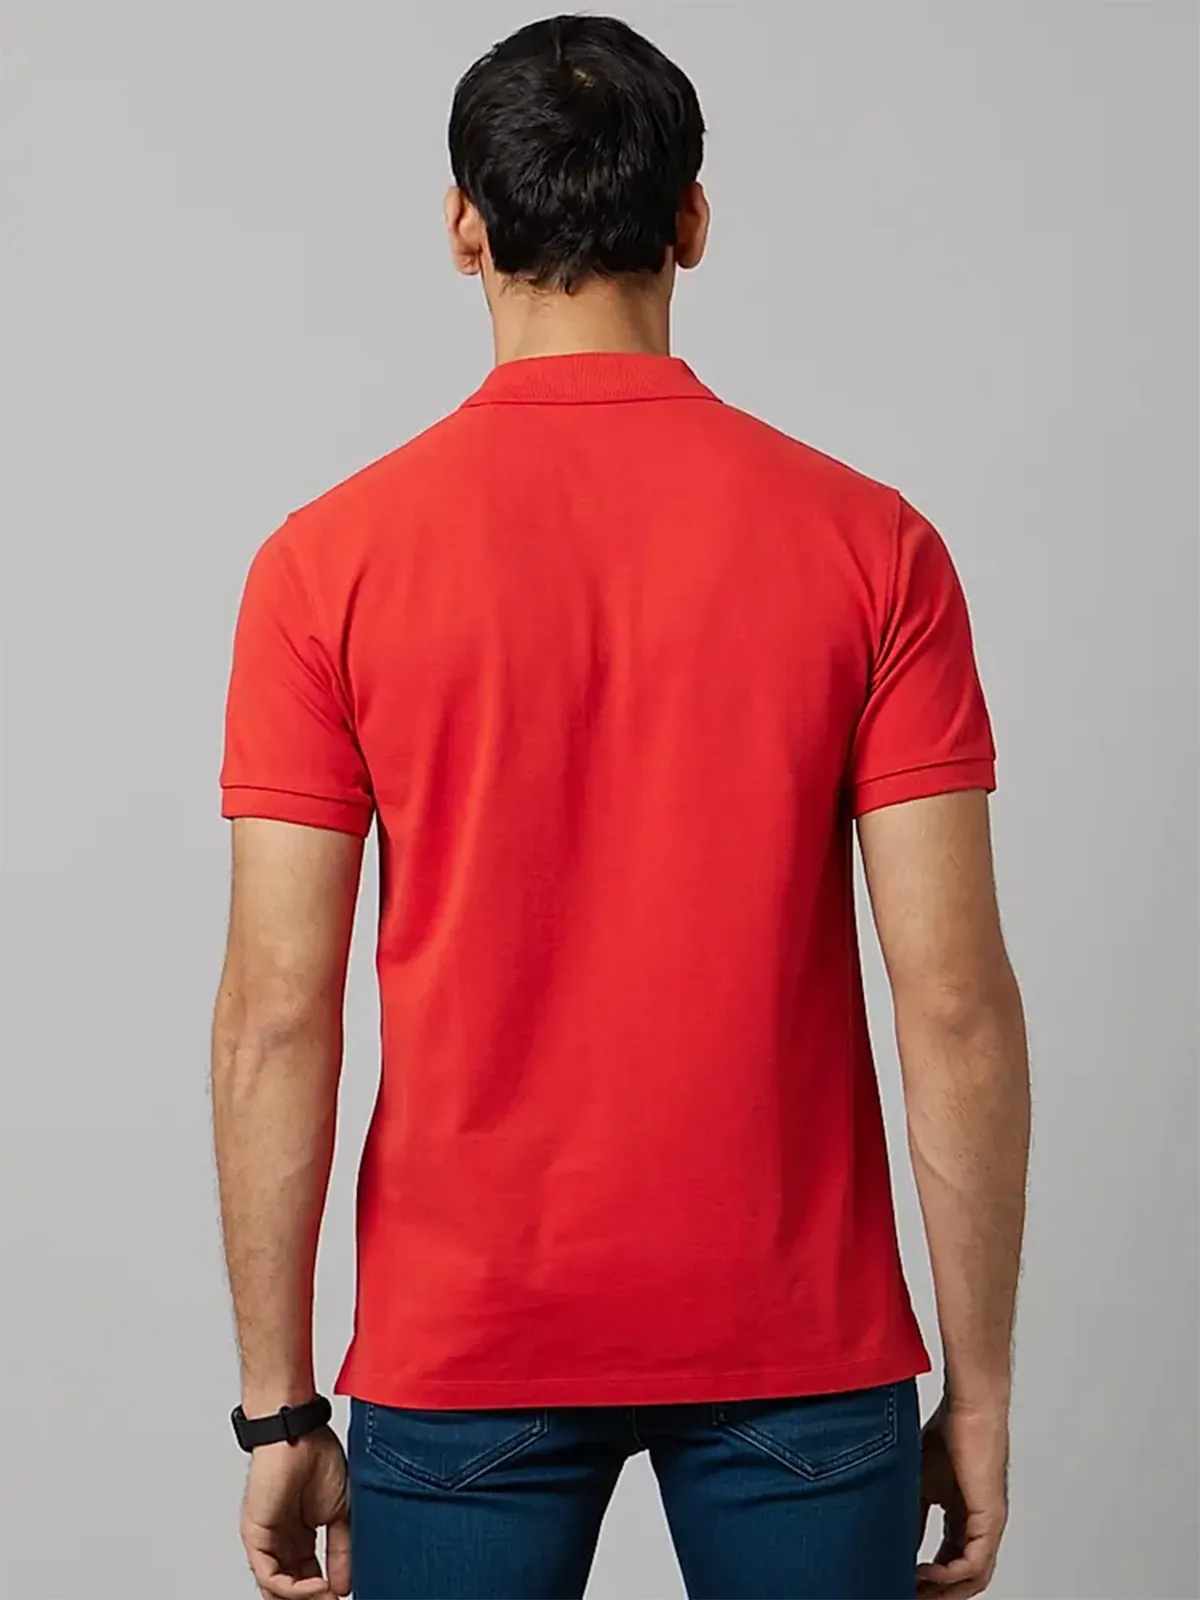 Celio red cotton plain t shirt